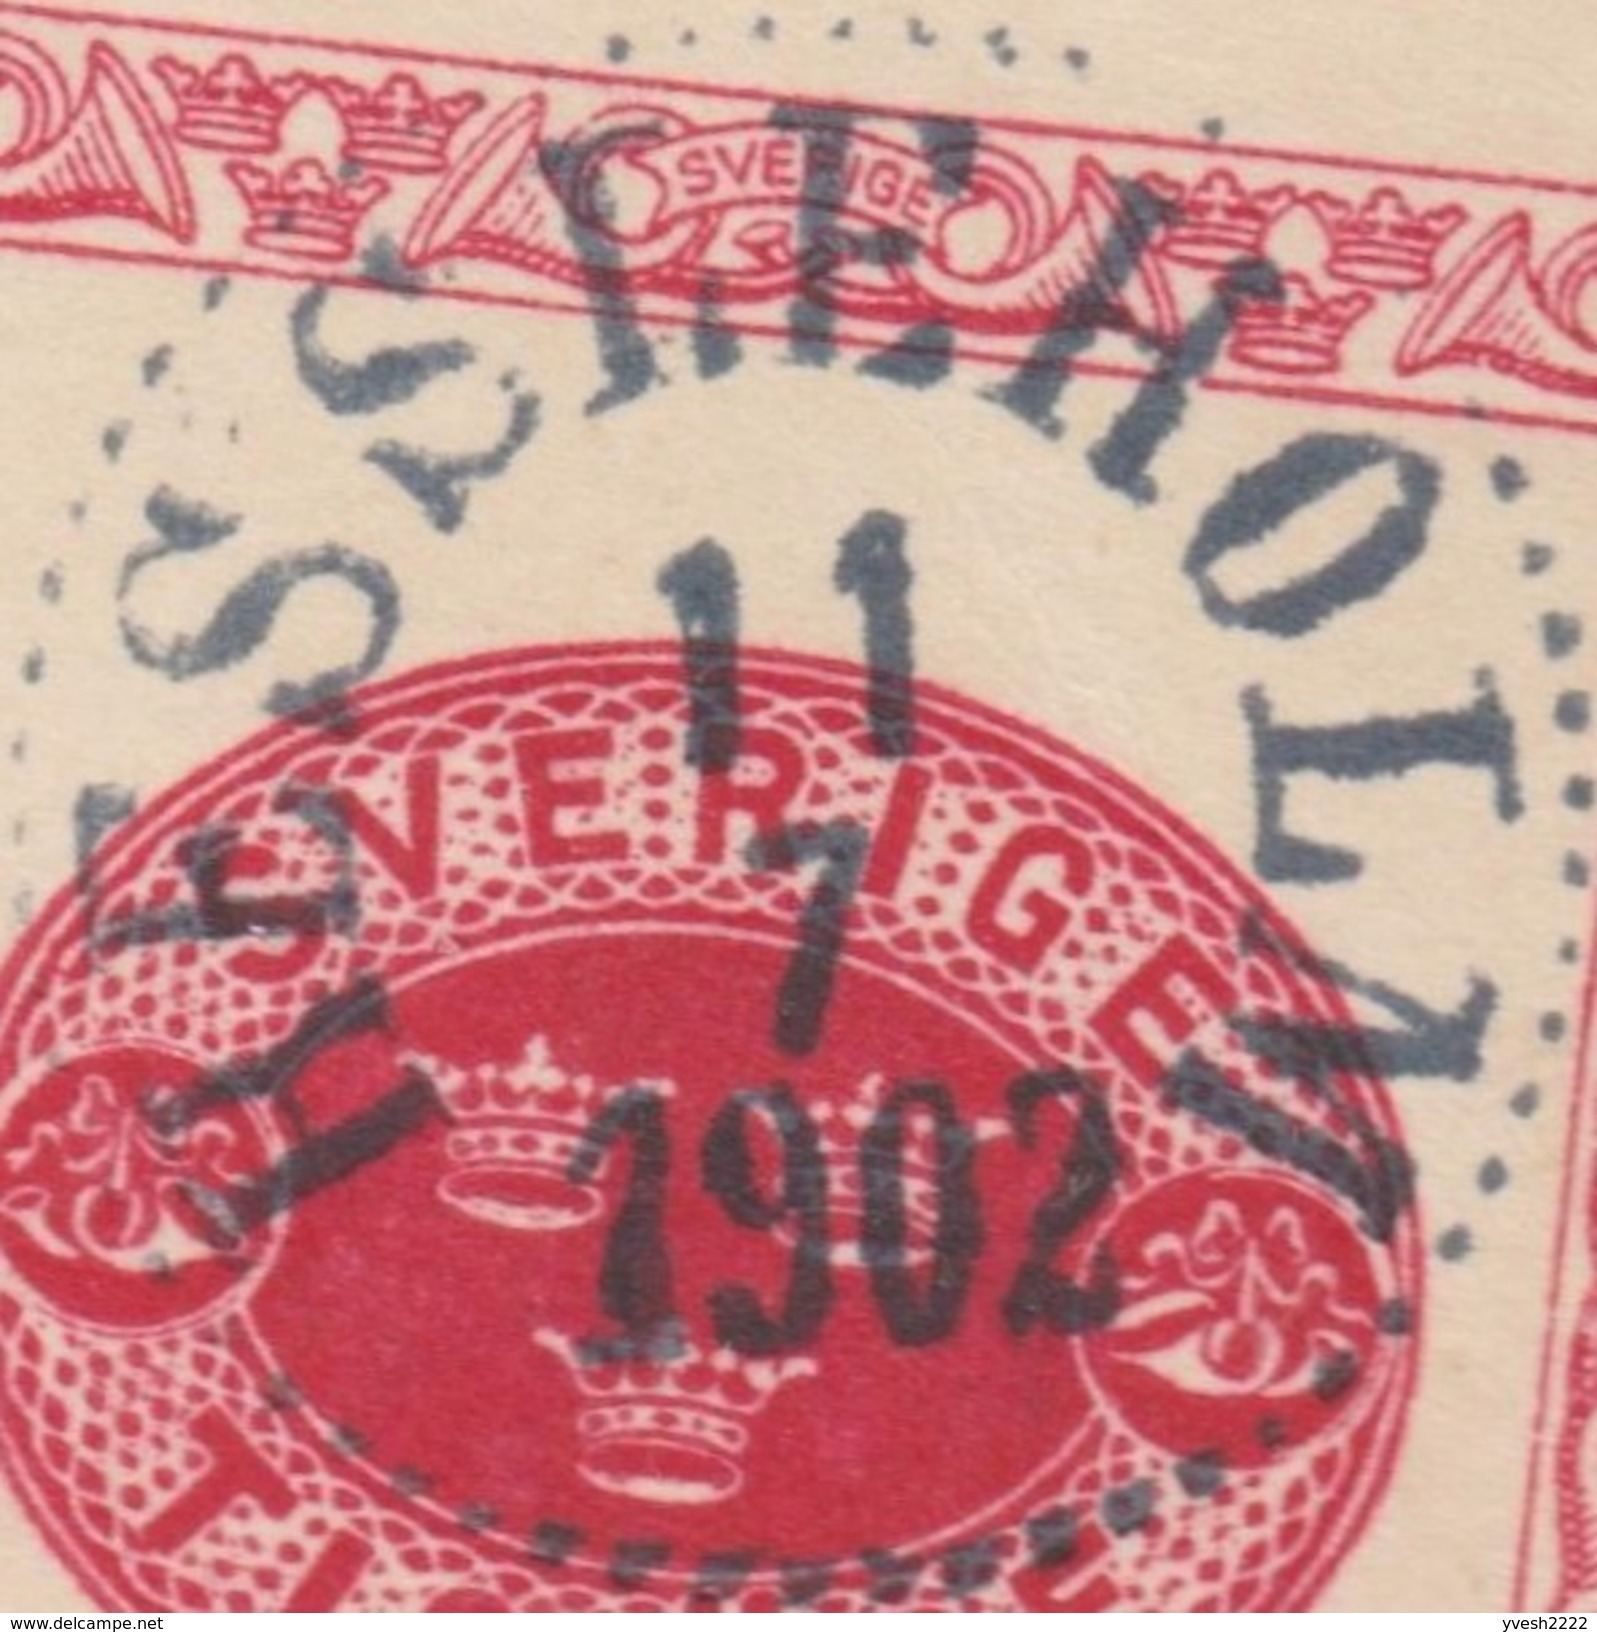 Suède 1902. Carte Postale, Entier De 1889 Pour Dresden. Hessleholm (Hässleholm) Via Trelleborg. Michel P20b - 1885-1911 Oscar II